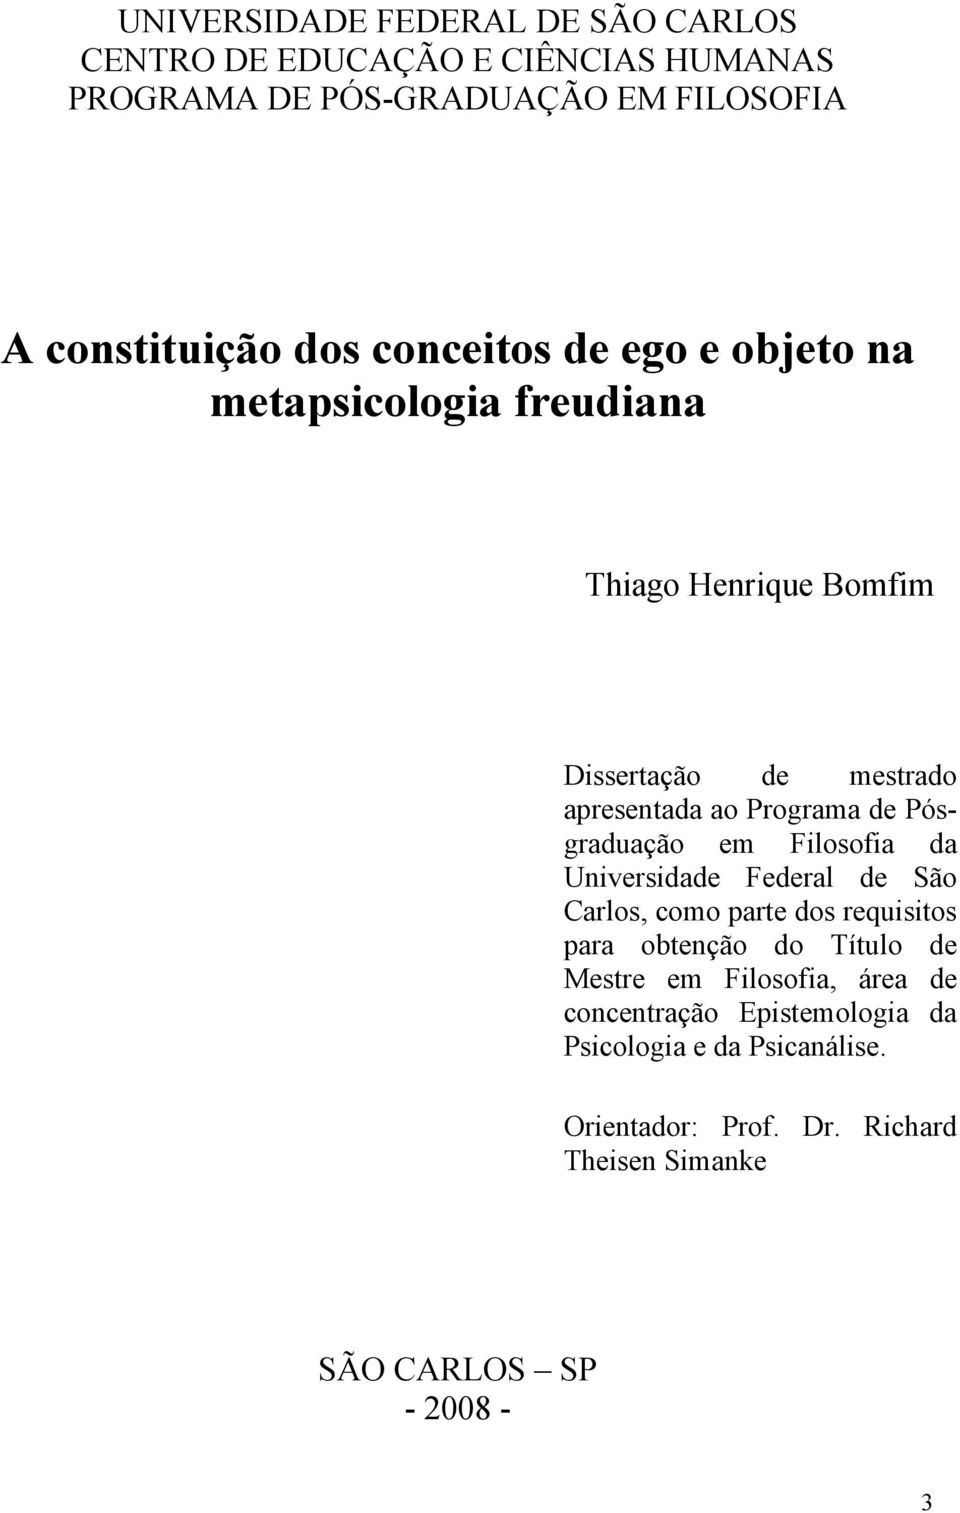 Pósgraduação em Filosofia da Universidade Federal de São Carlos, como parte dos requisitos para obtenção do Título de Mestre em